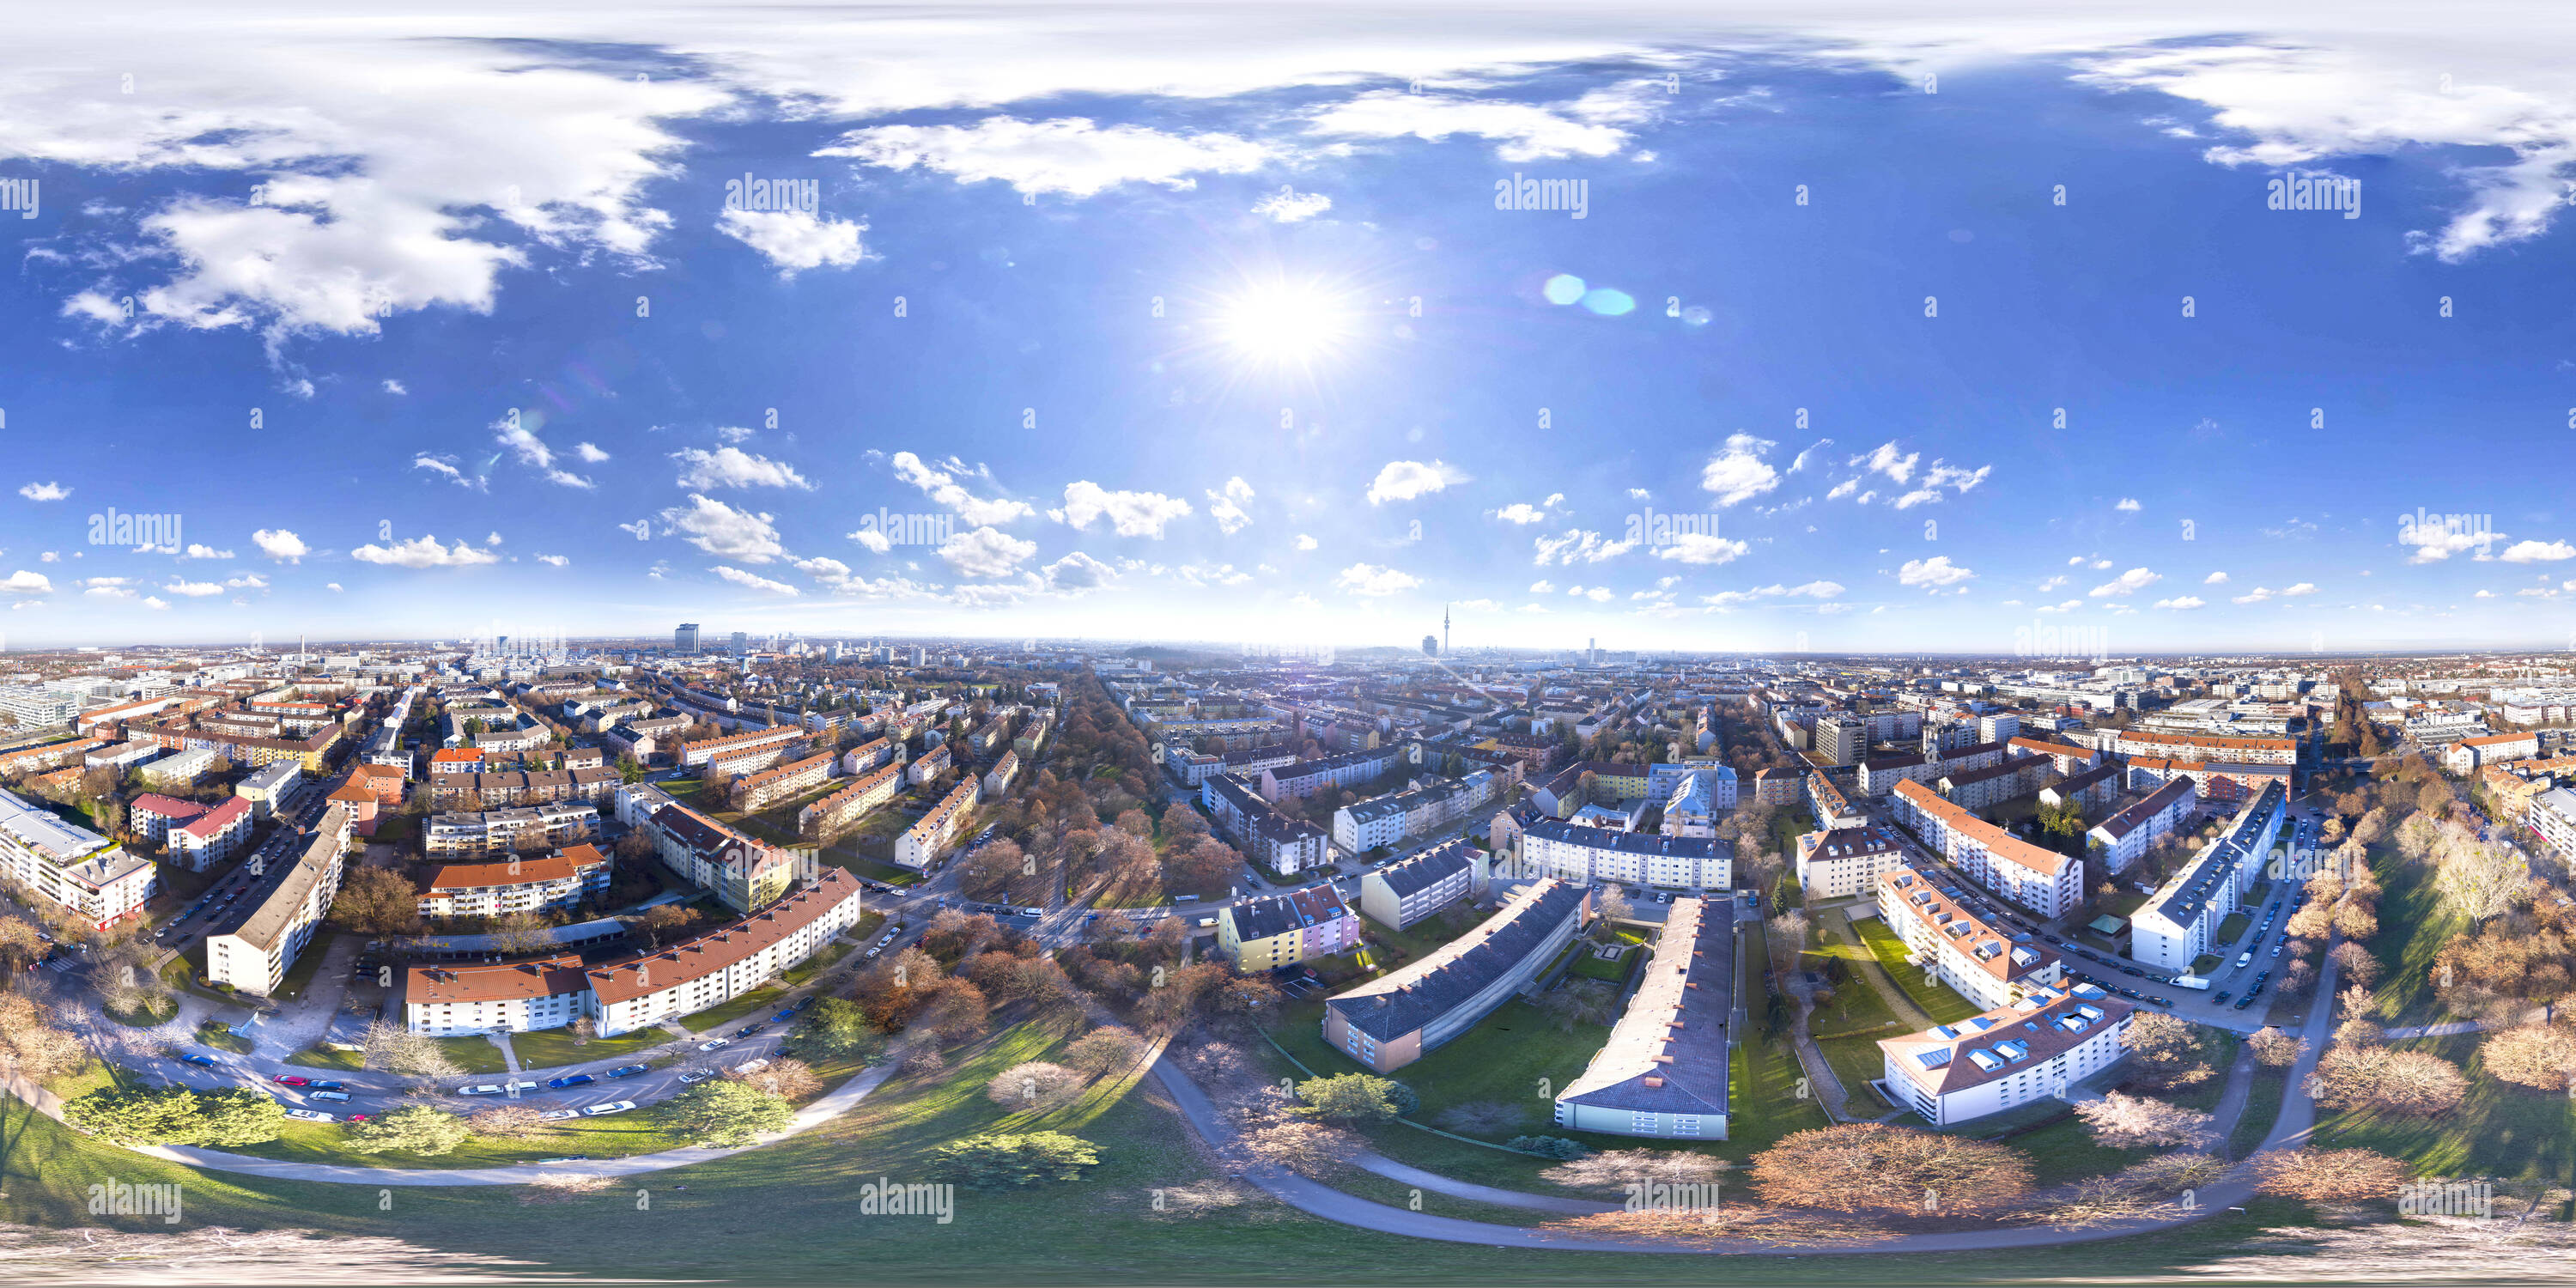 Visualizzazione panoramica a 360 gradi di Milberthofen un quartiere di Monaco di Baviera, Dec 2016, Vista Aerea